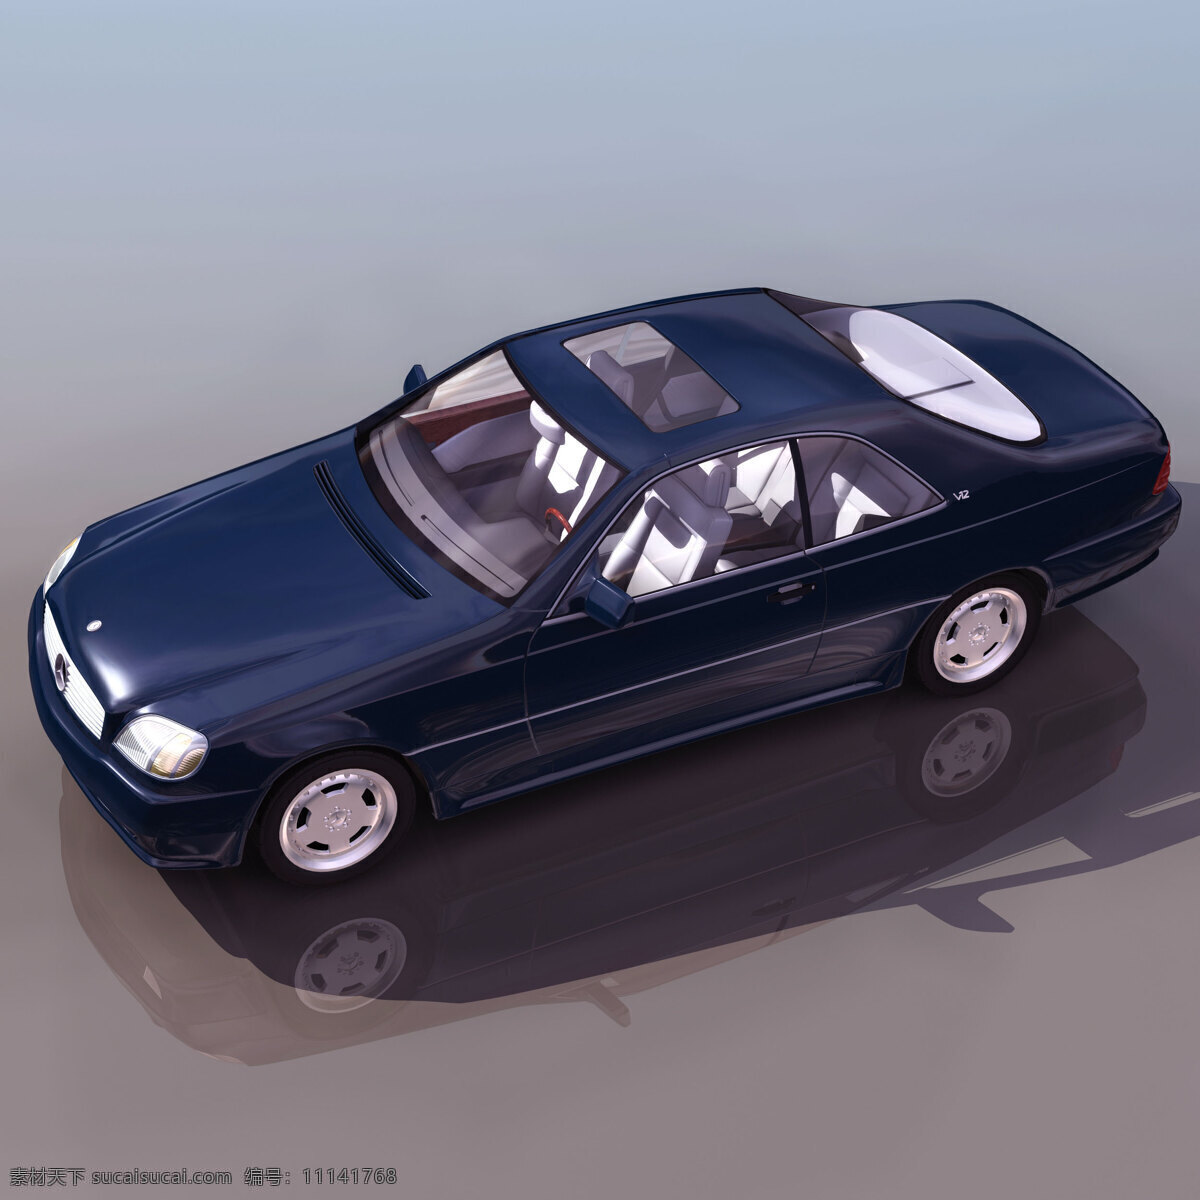 小轿车 模型 mercedes 轿车 小轿车模型 机动车辆 3d模型素材 电器模型